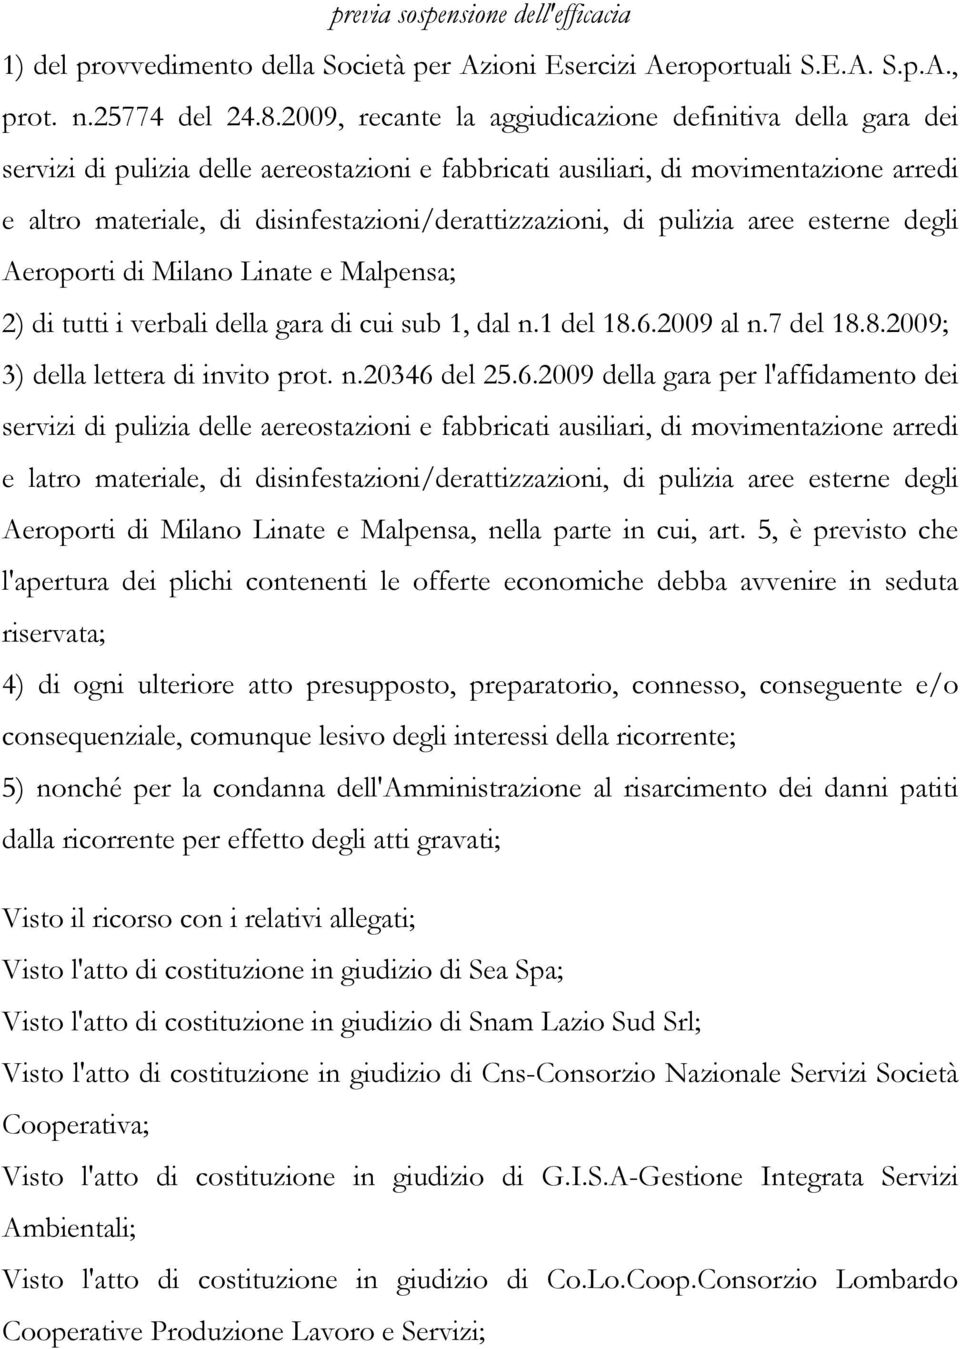 disinfestazioni/derattizzazioni, di pulizia aree esterne degli Aeroporti di Milano Linate e Malpensa; 2) di tutti i verbali della gara di cui sub 1, dal n.1 del 18.